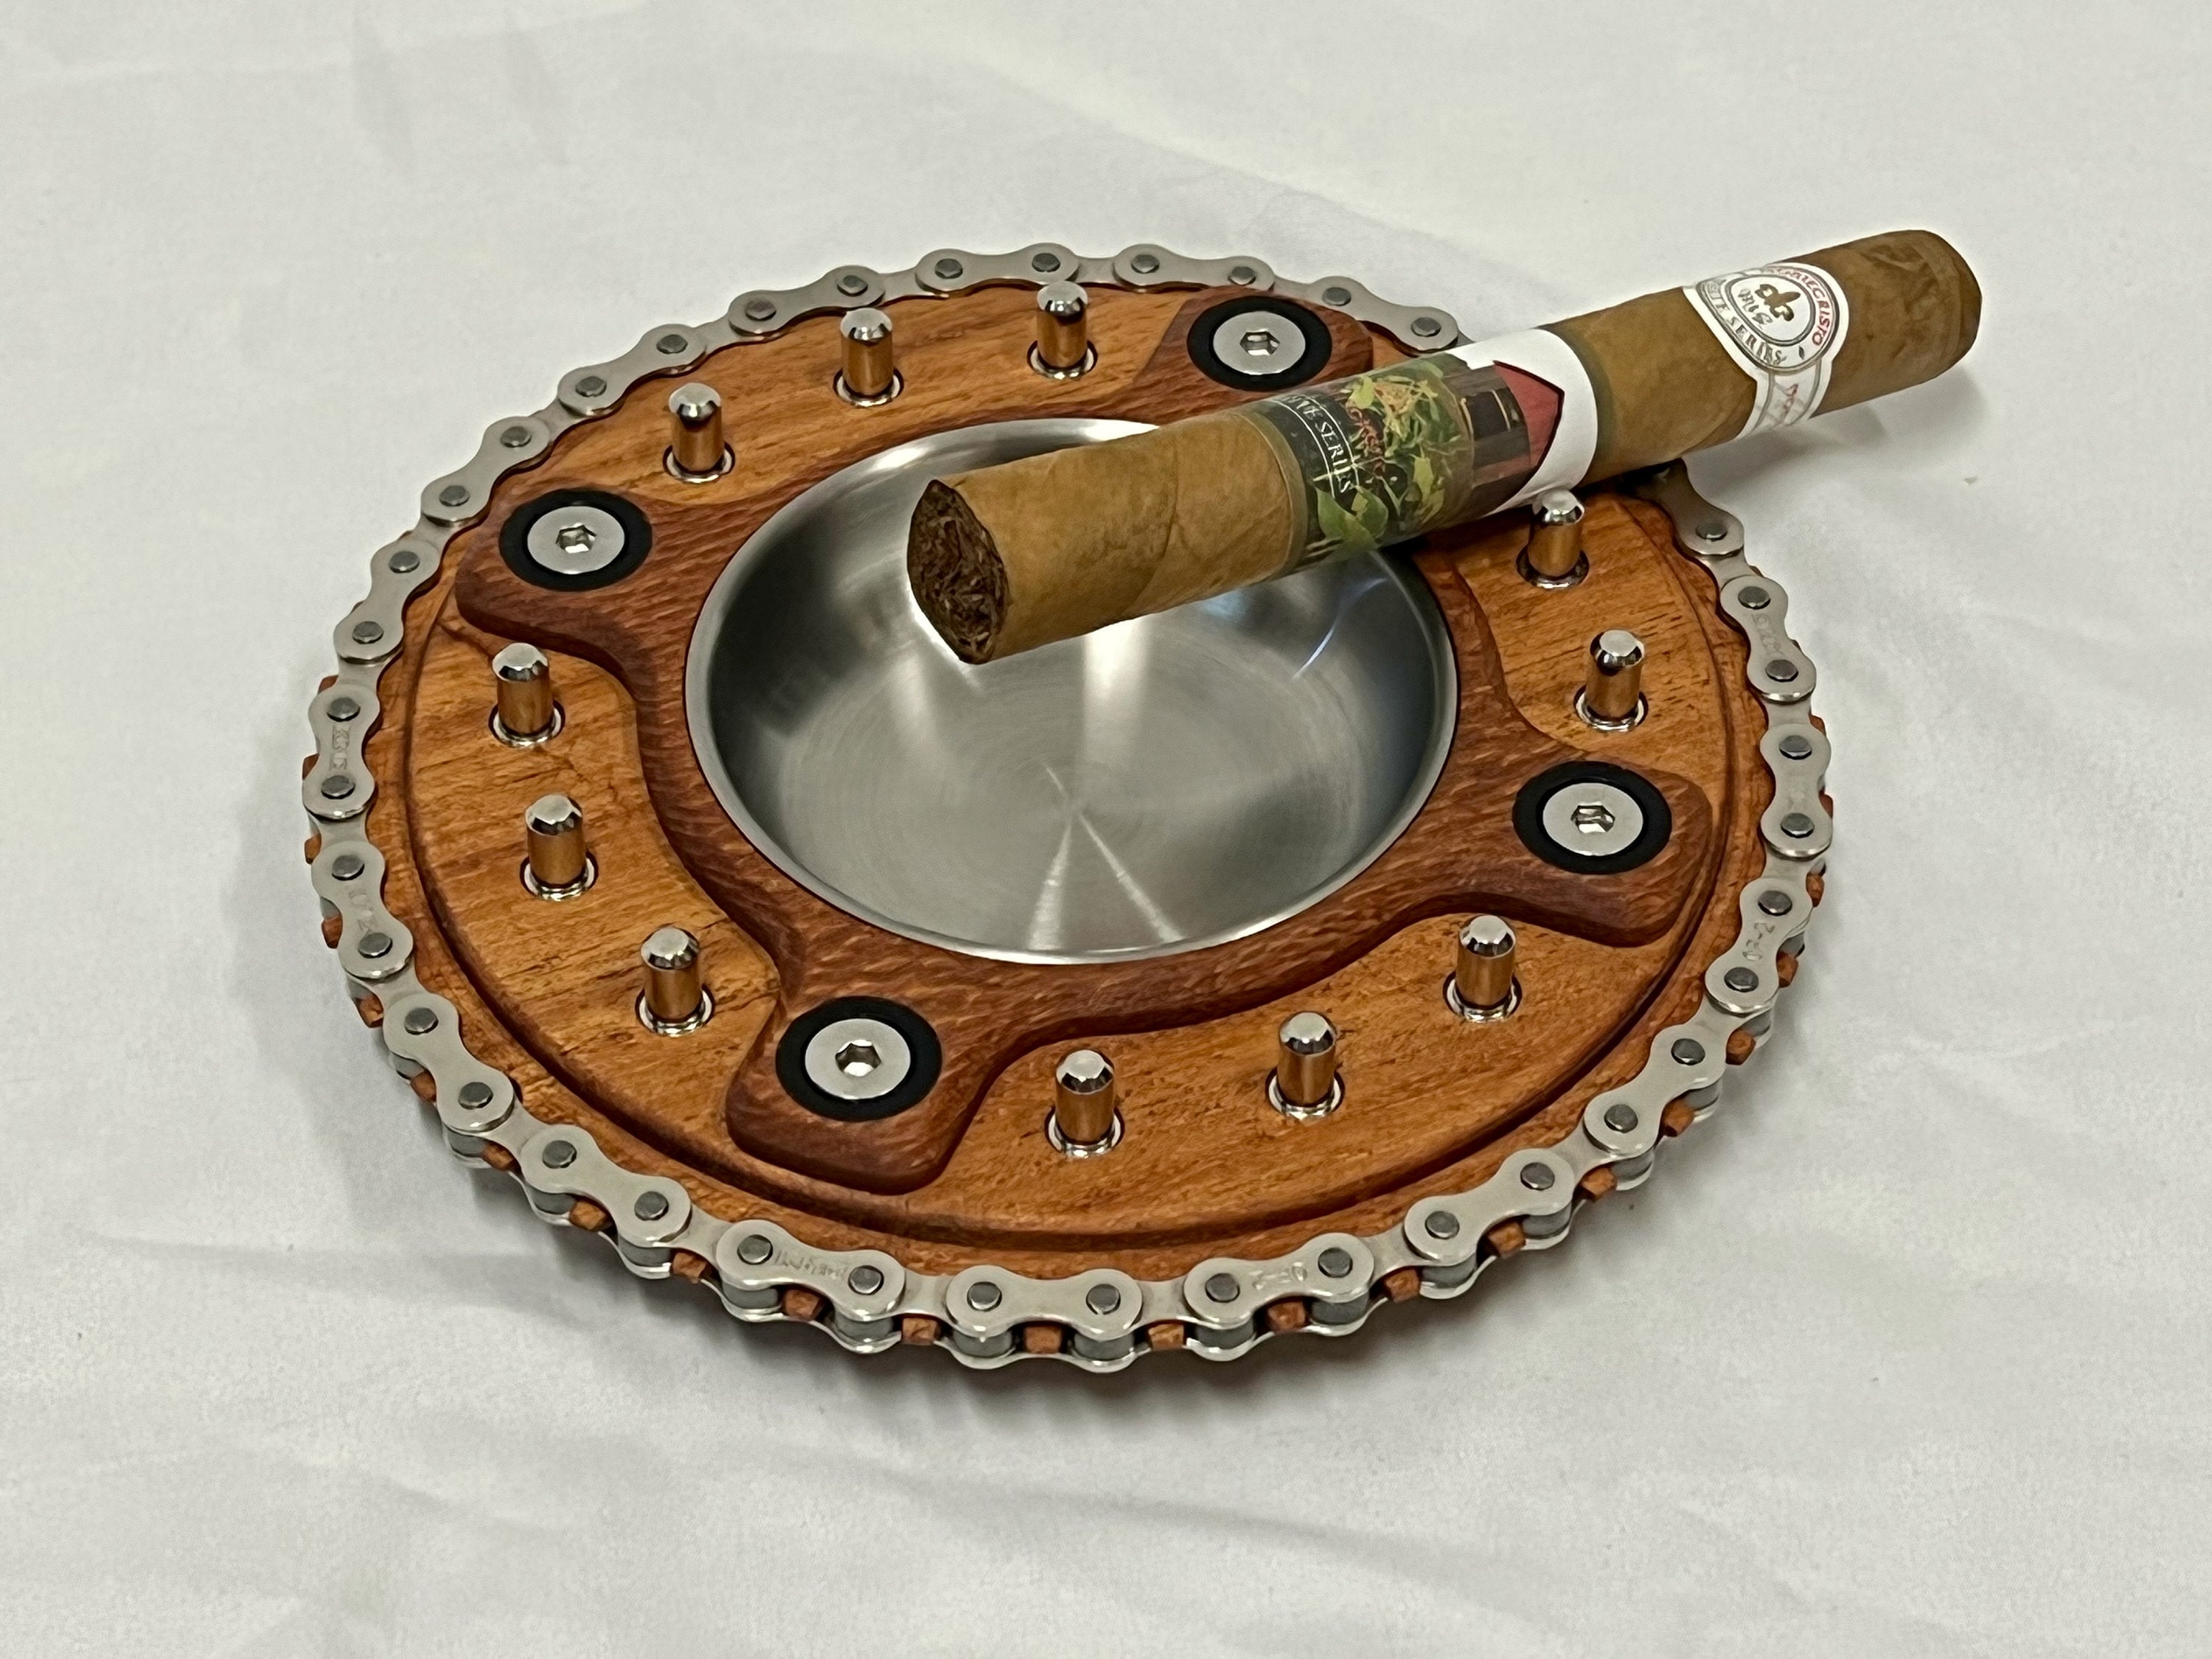 Zigarren Aschenbecher Exotisches Holz Radfahren / Mountainbike Thema Luxus  - .de